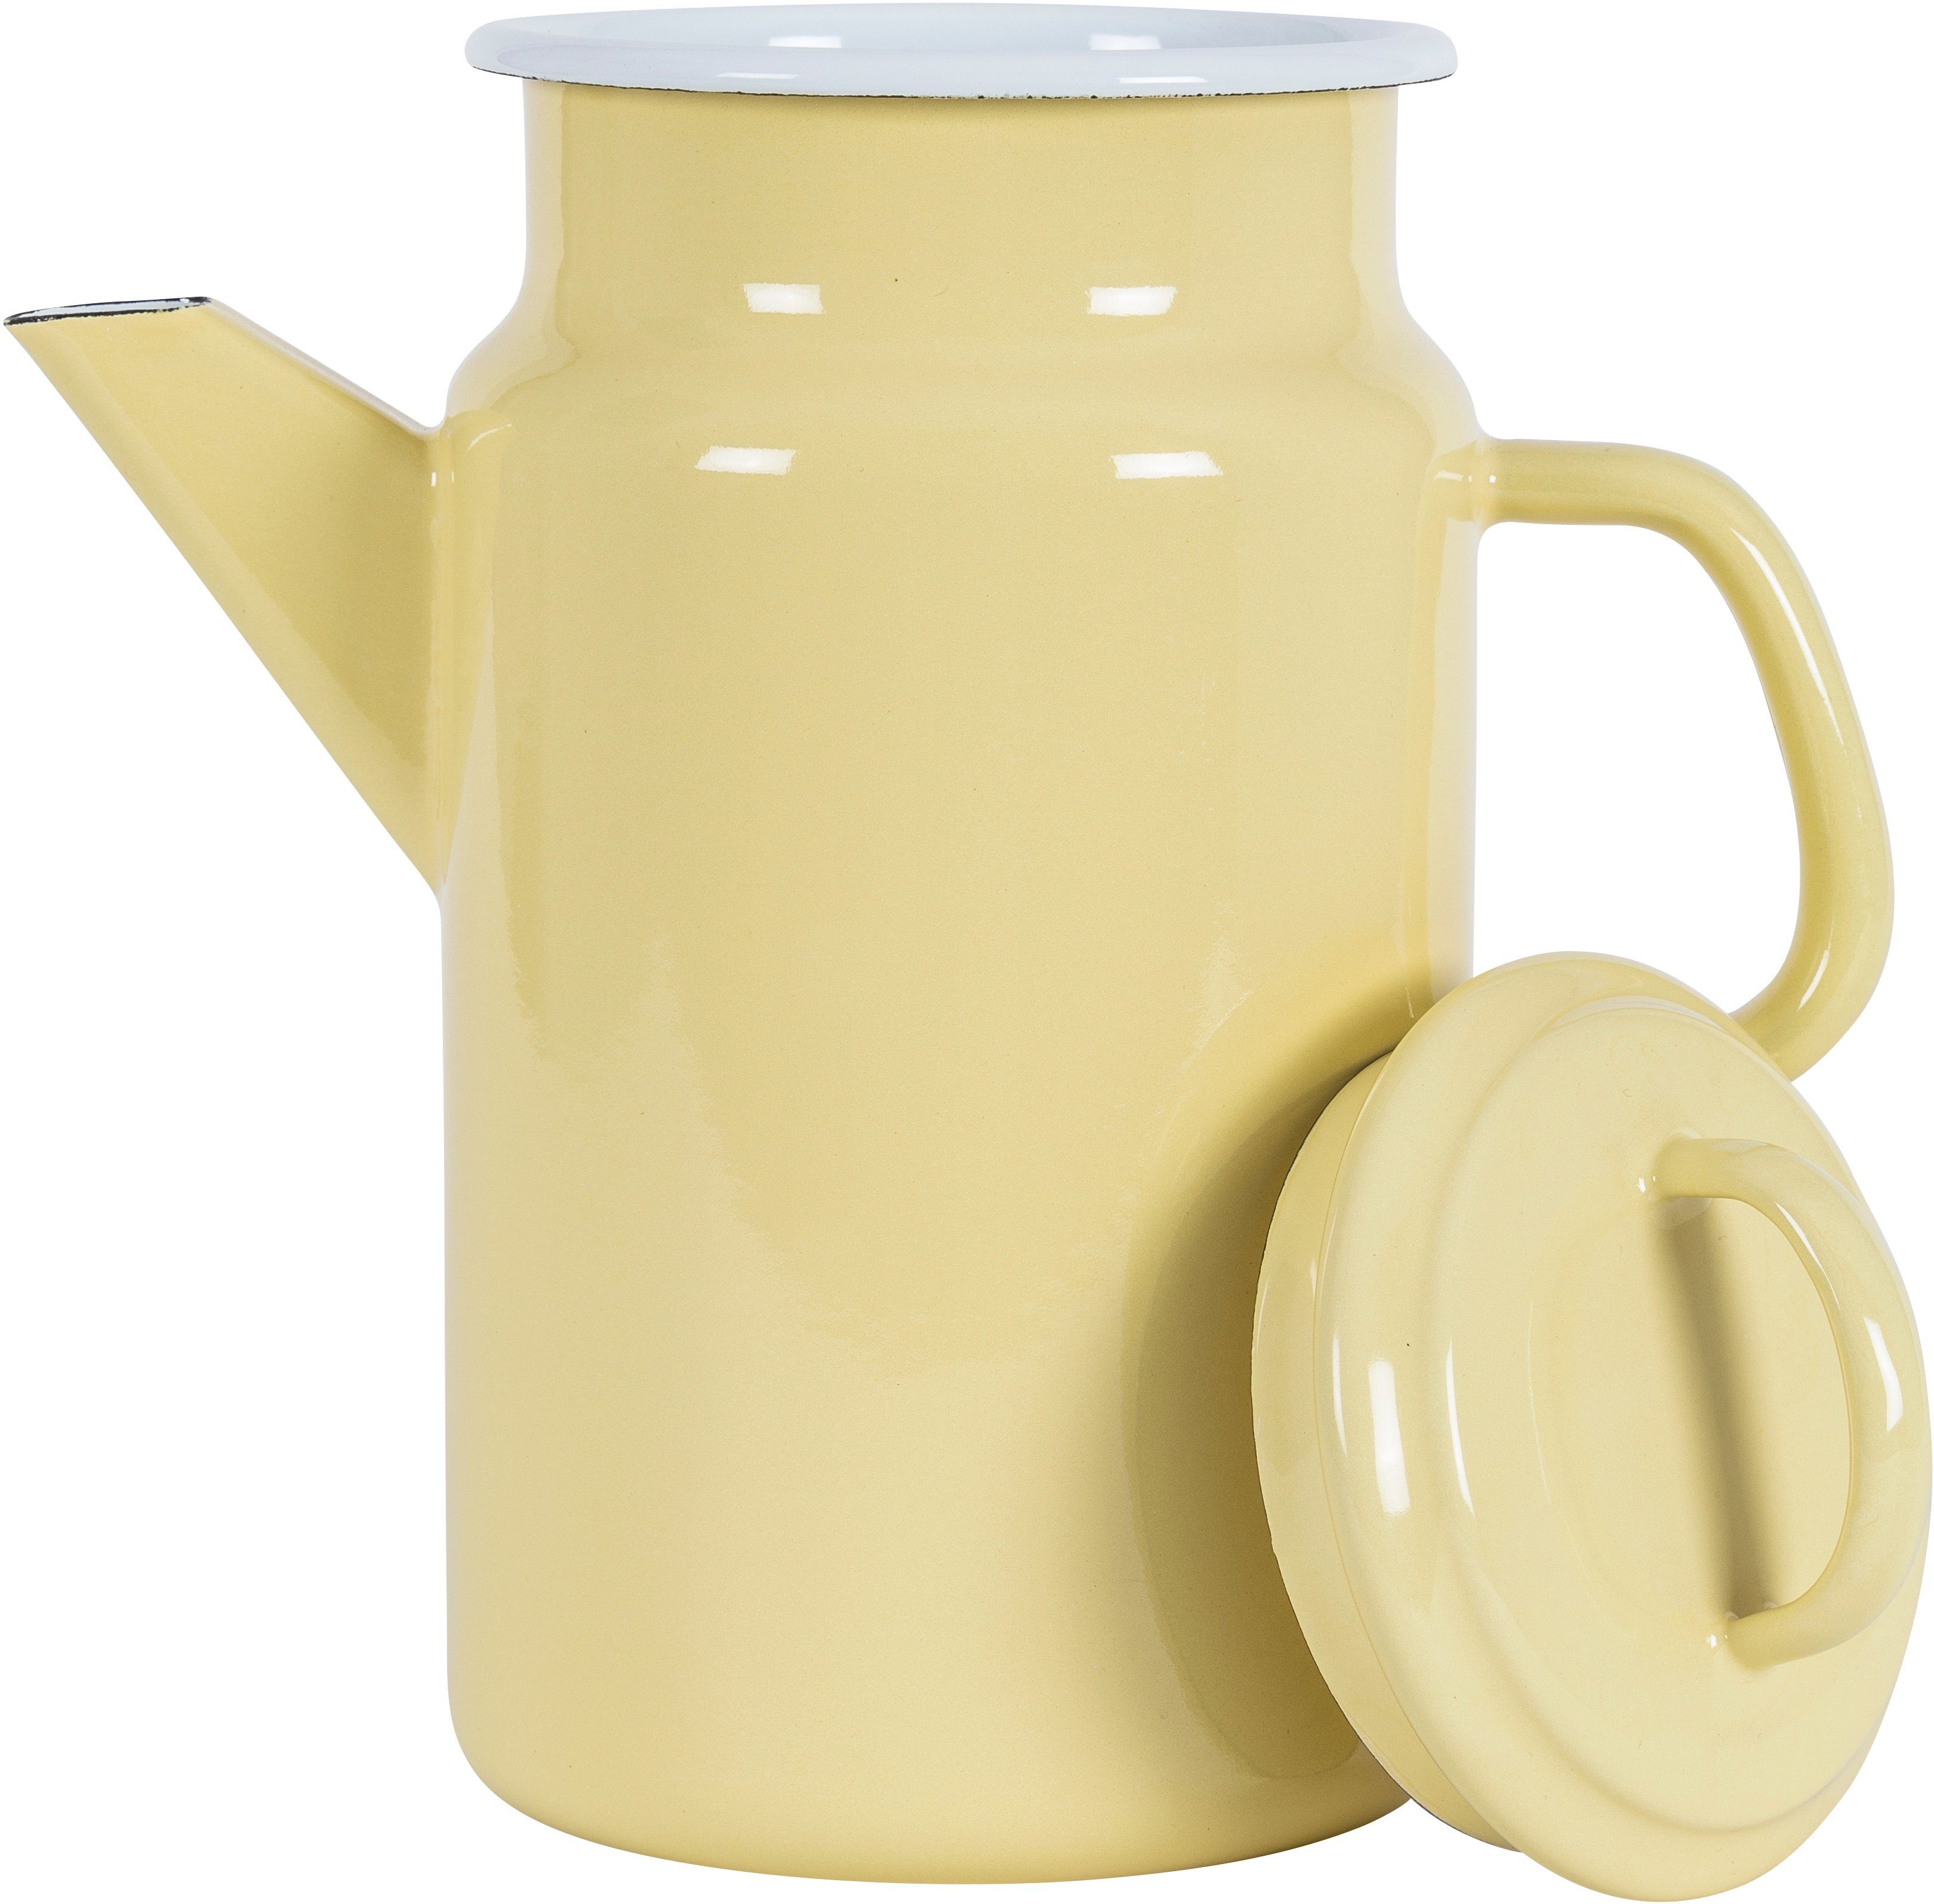 KOCKUMS® Teekanne Jernverk, 2 einer Teekanne gelb und Retro-Design vereint Emaille, in l, Nachhaltigkeit